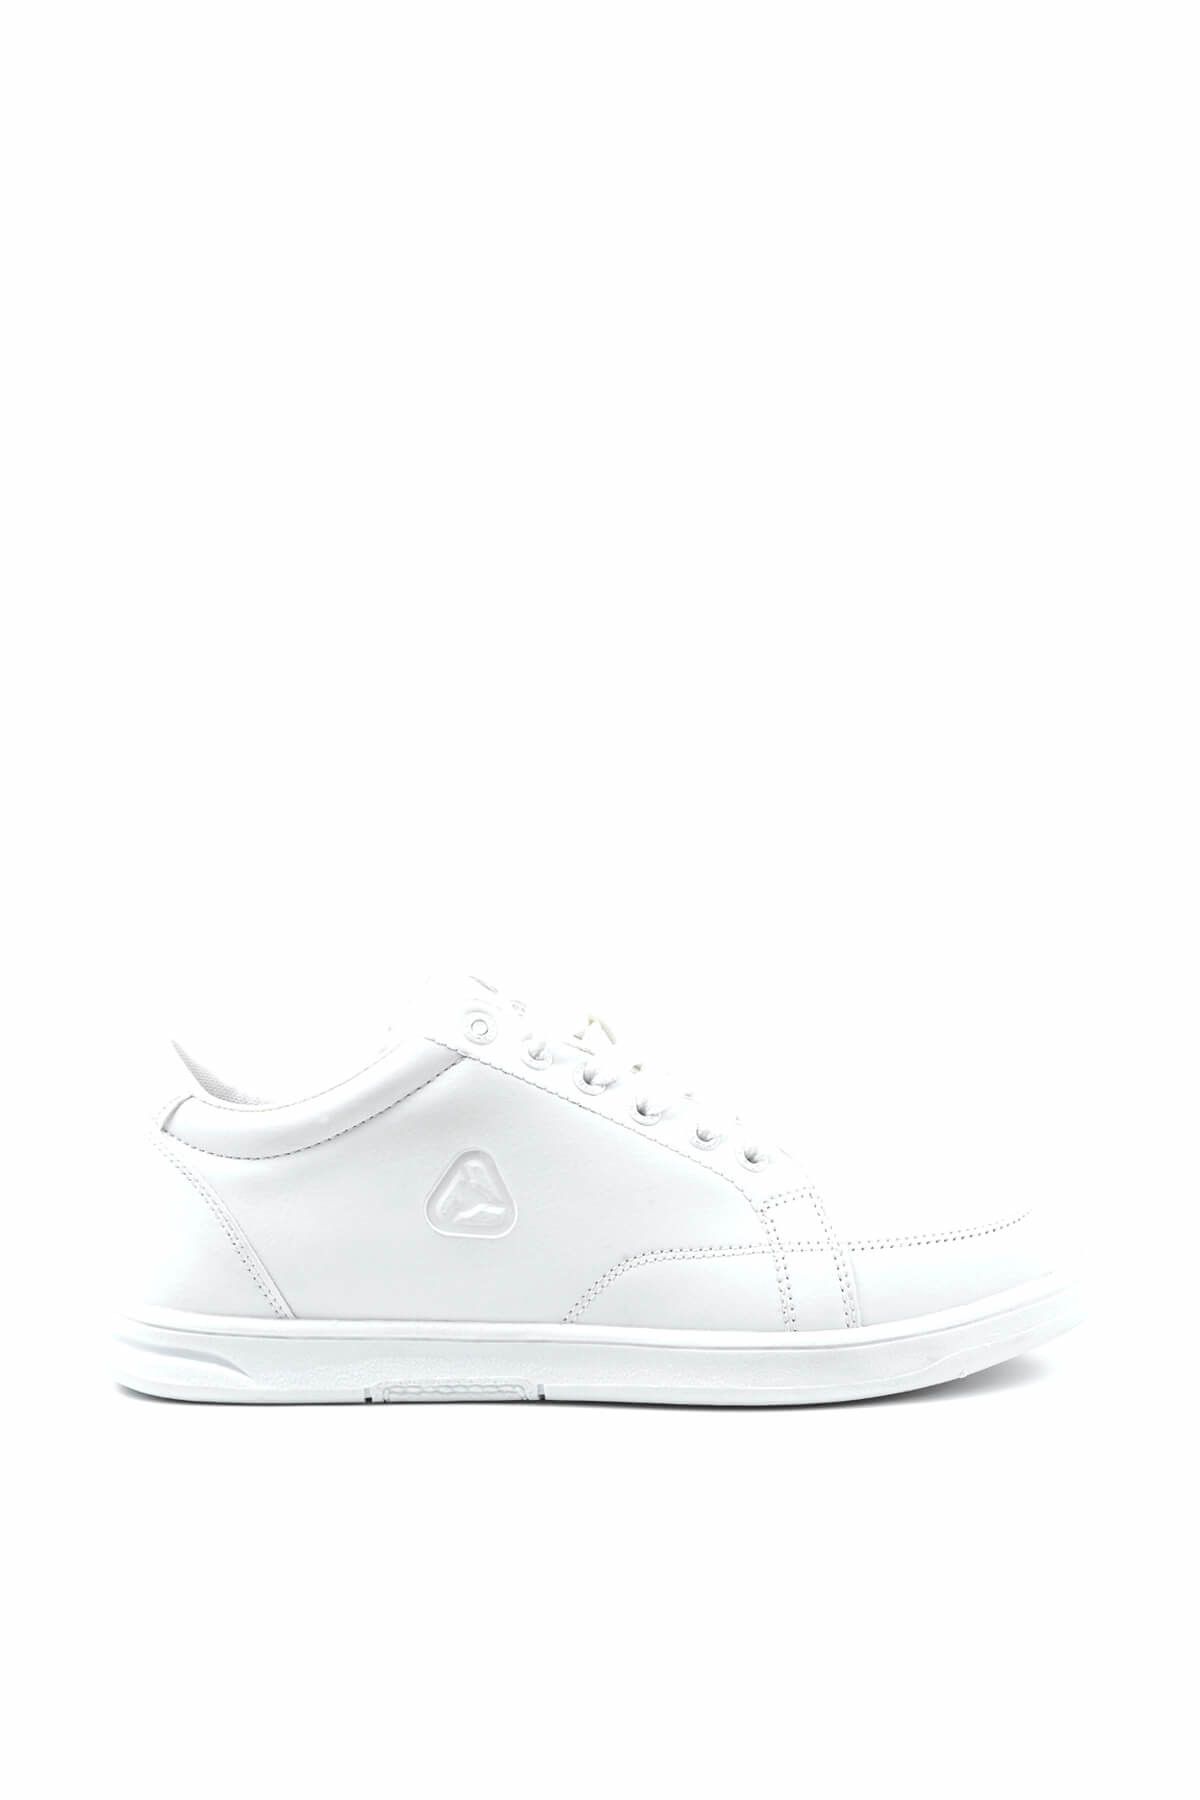 LETOON Beyaz Beyaz Unisex Spor Ayakkabı - 001G 6157